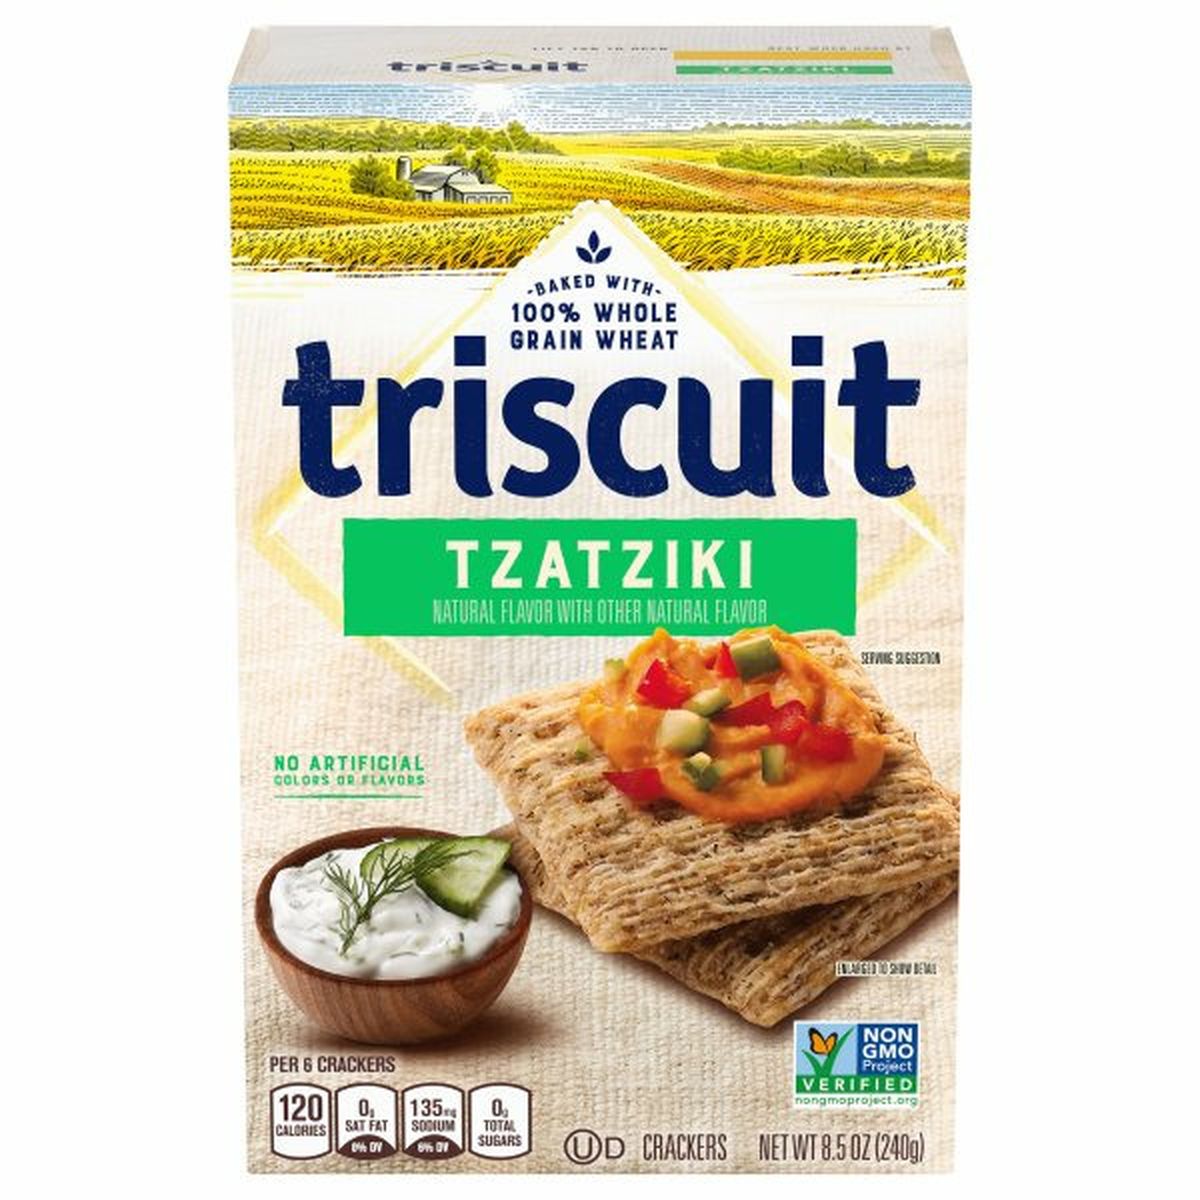 Calories in Triscuit Crackers, Tzatziki